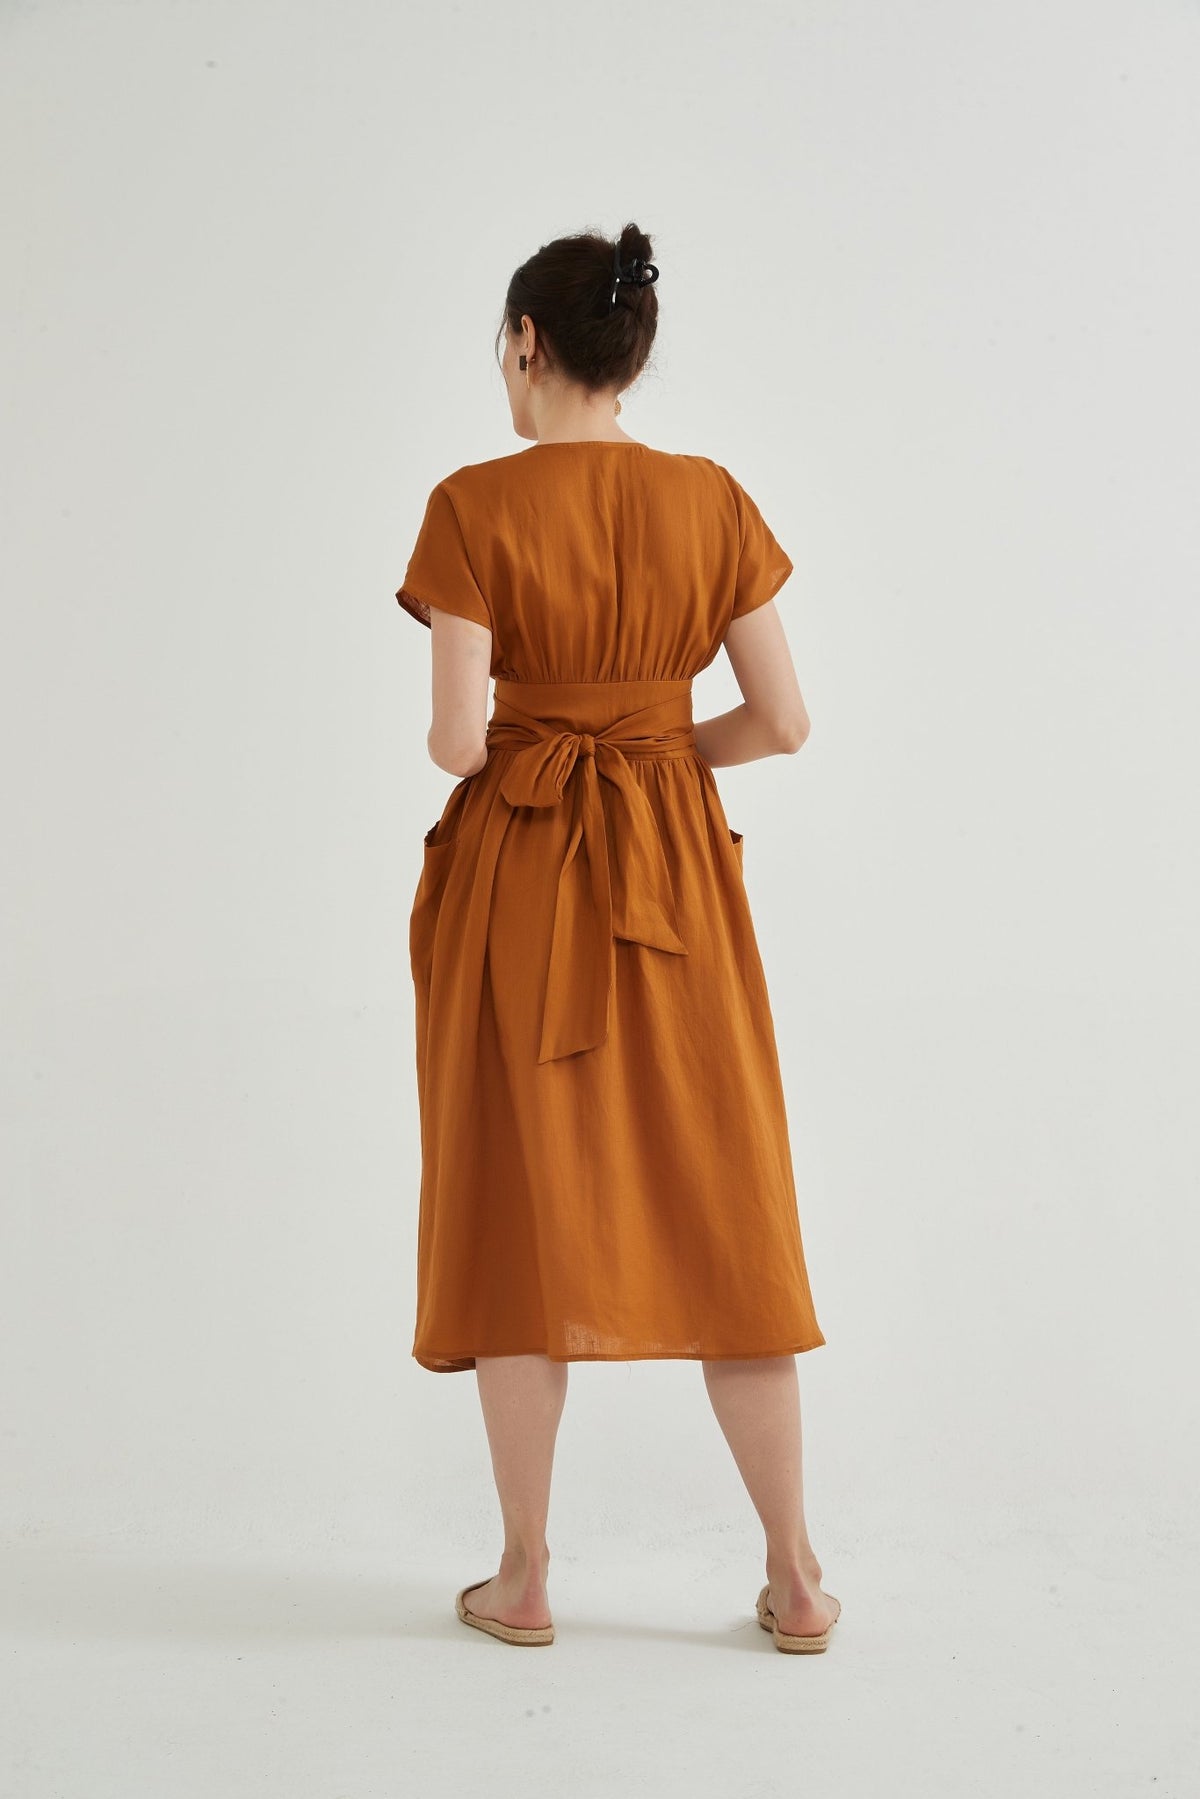 Fiona 100% Linen Wrap Side Tie Dress - Whisper Mint